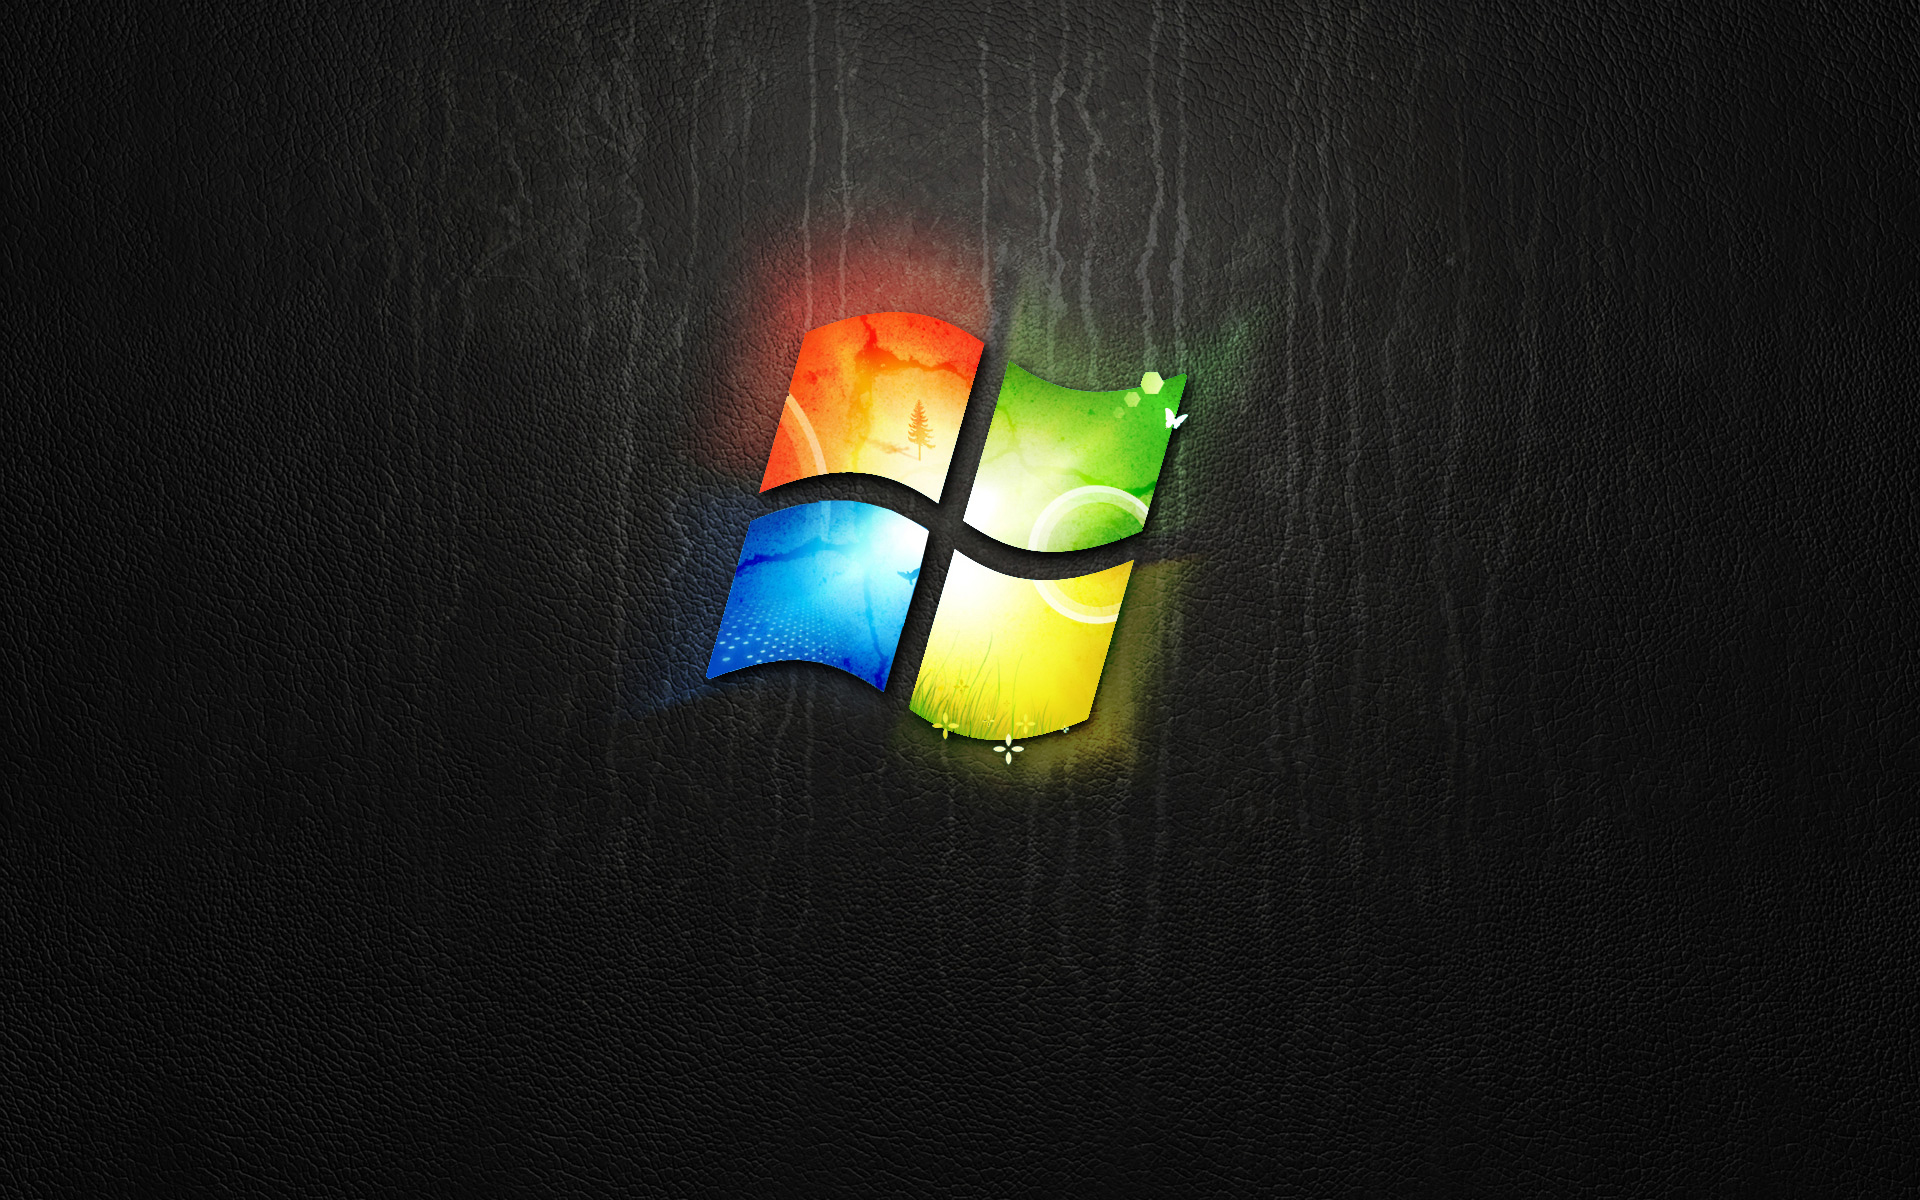 Dark Windows Logo274526076 - Dark Windows Logo - Windows, Logo, Dark